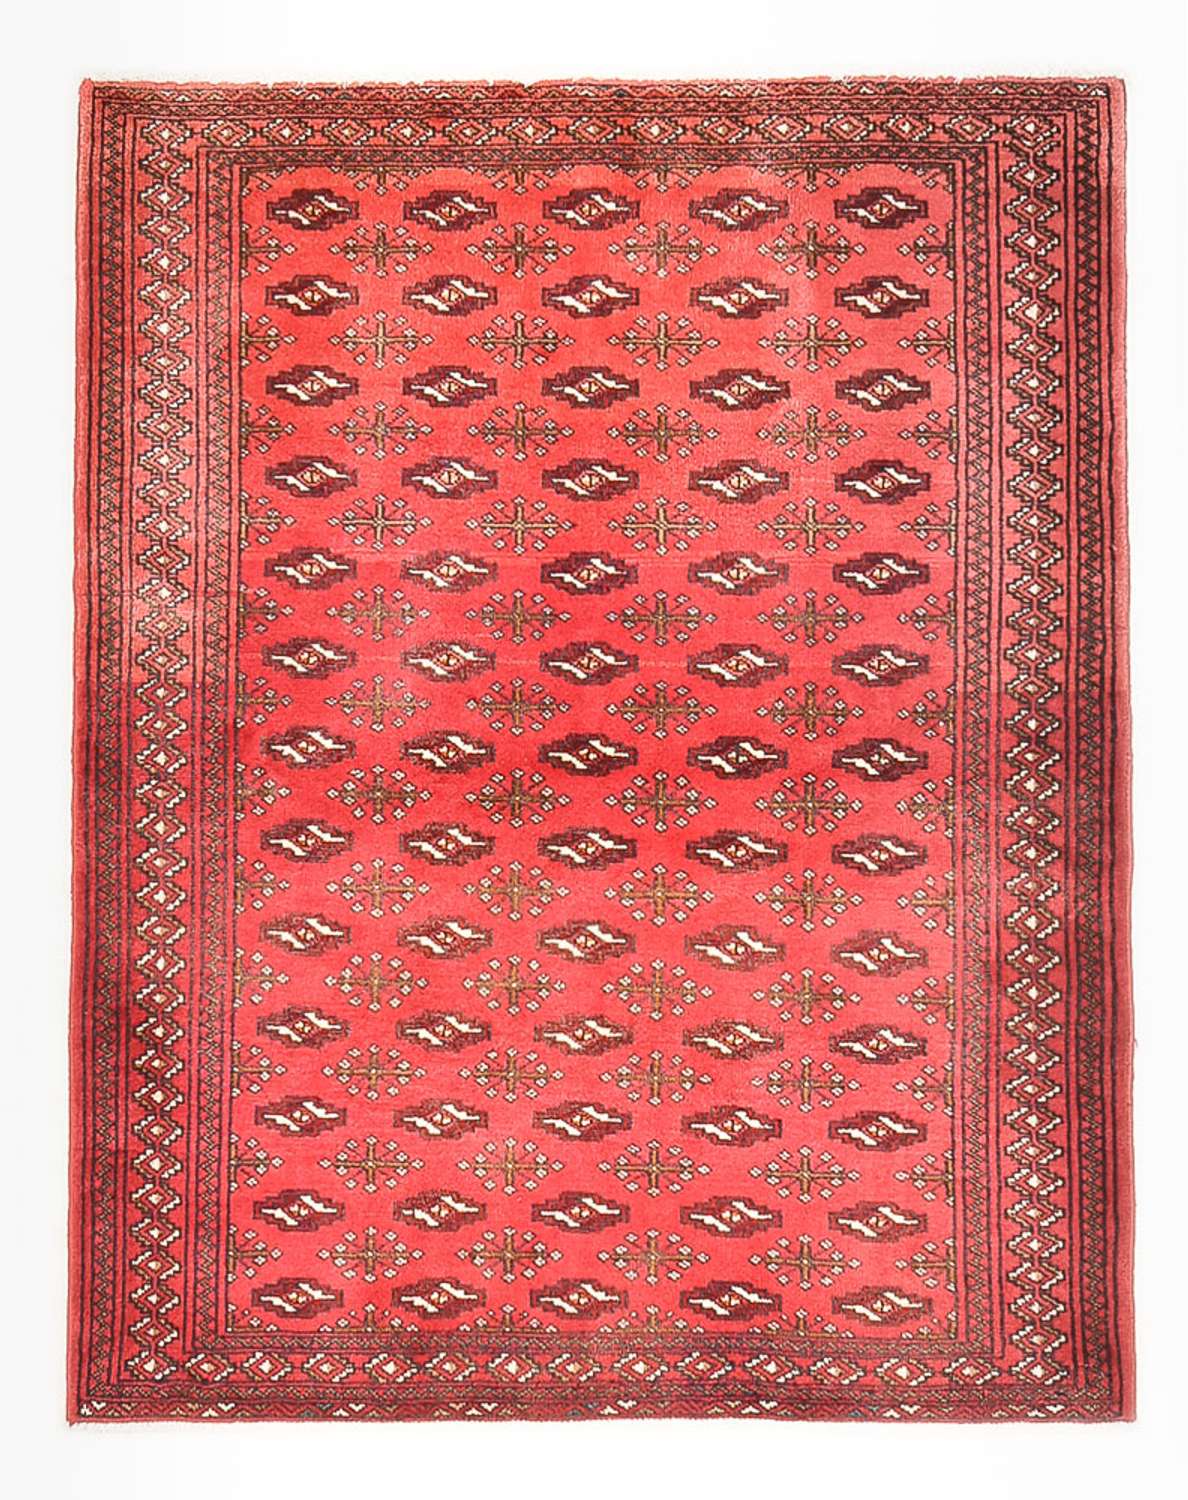 Dywan turkmeński - 138 x 110 cm - czerwony